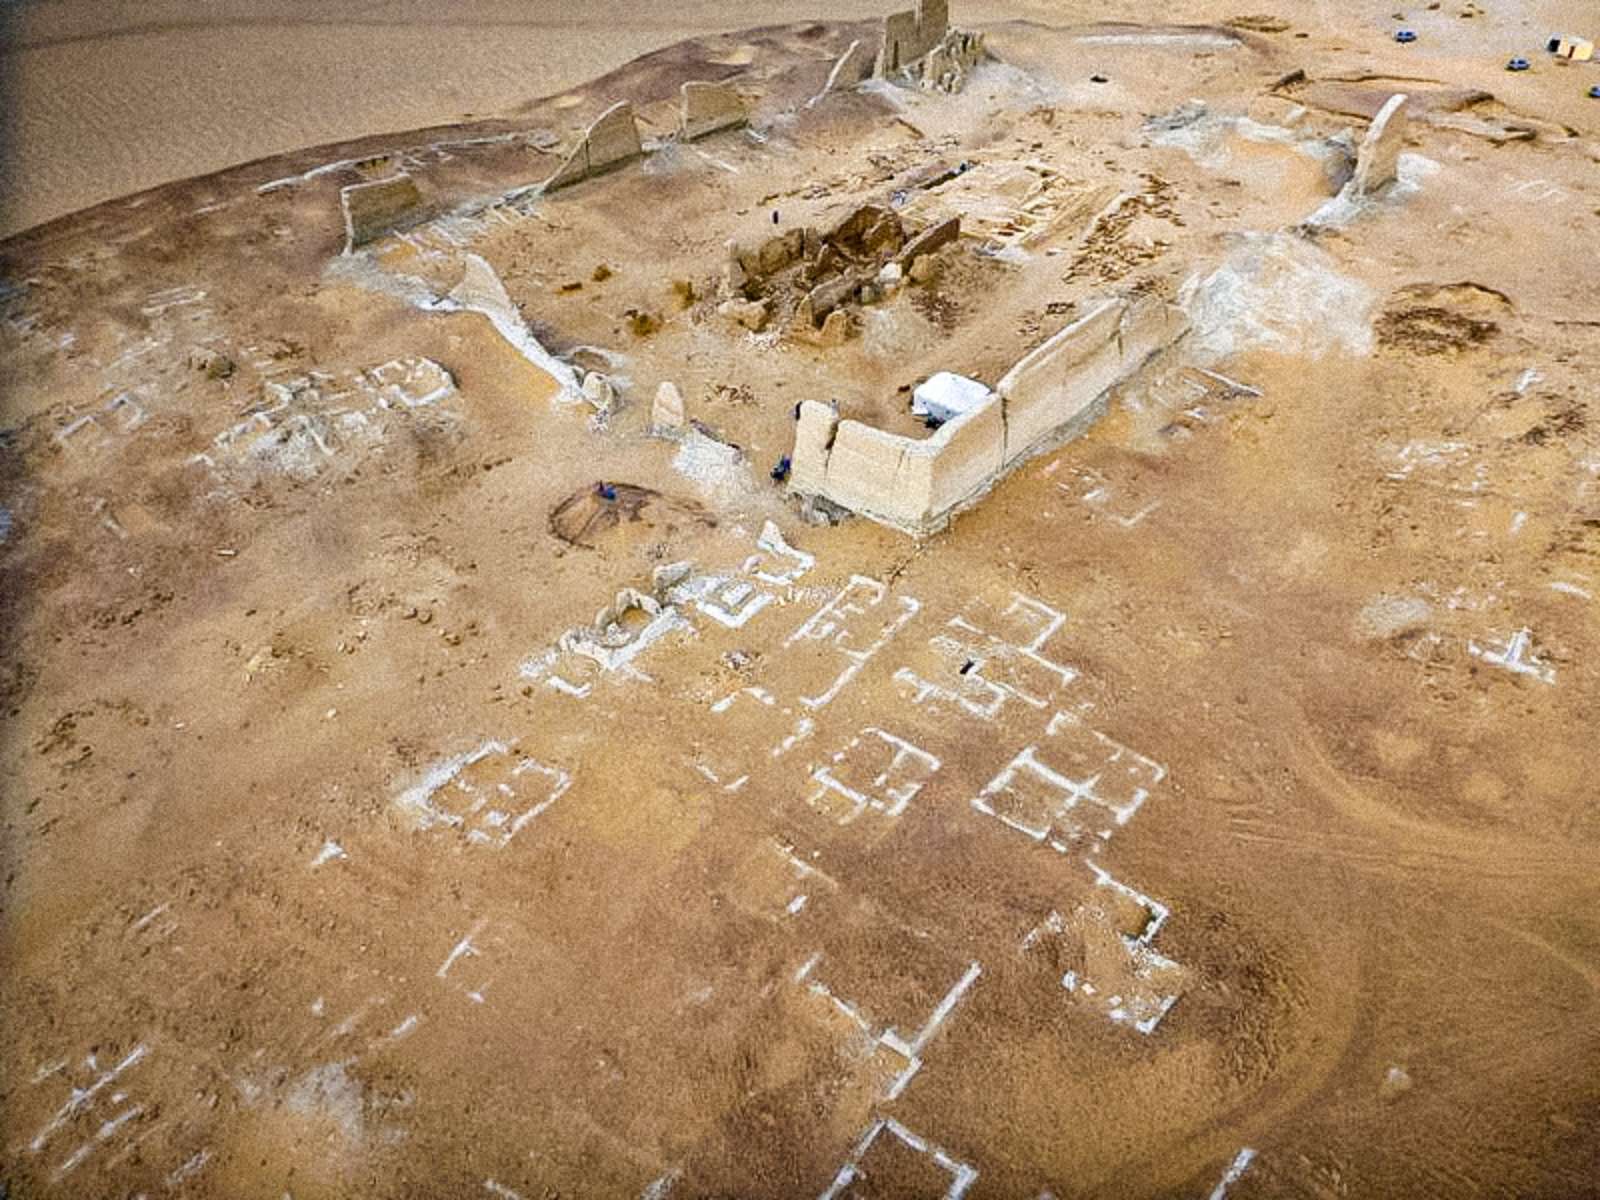 Soknopaiou Nesos: Een mysterieuze oude stad in de woestijn van Faiyum 1